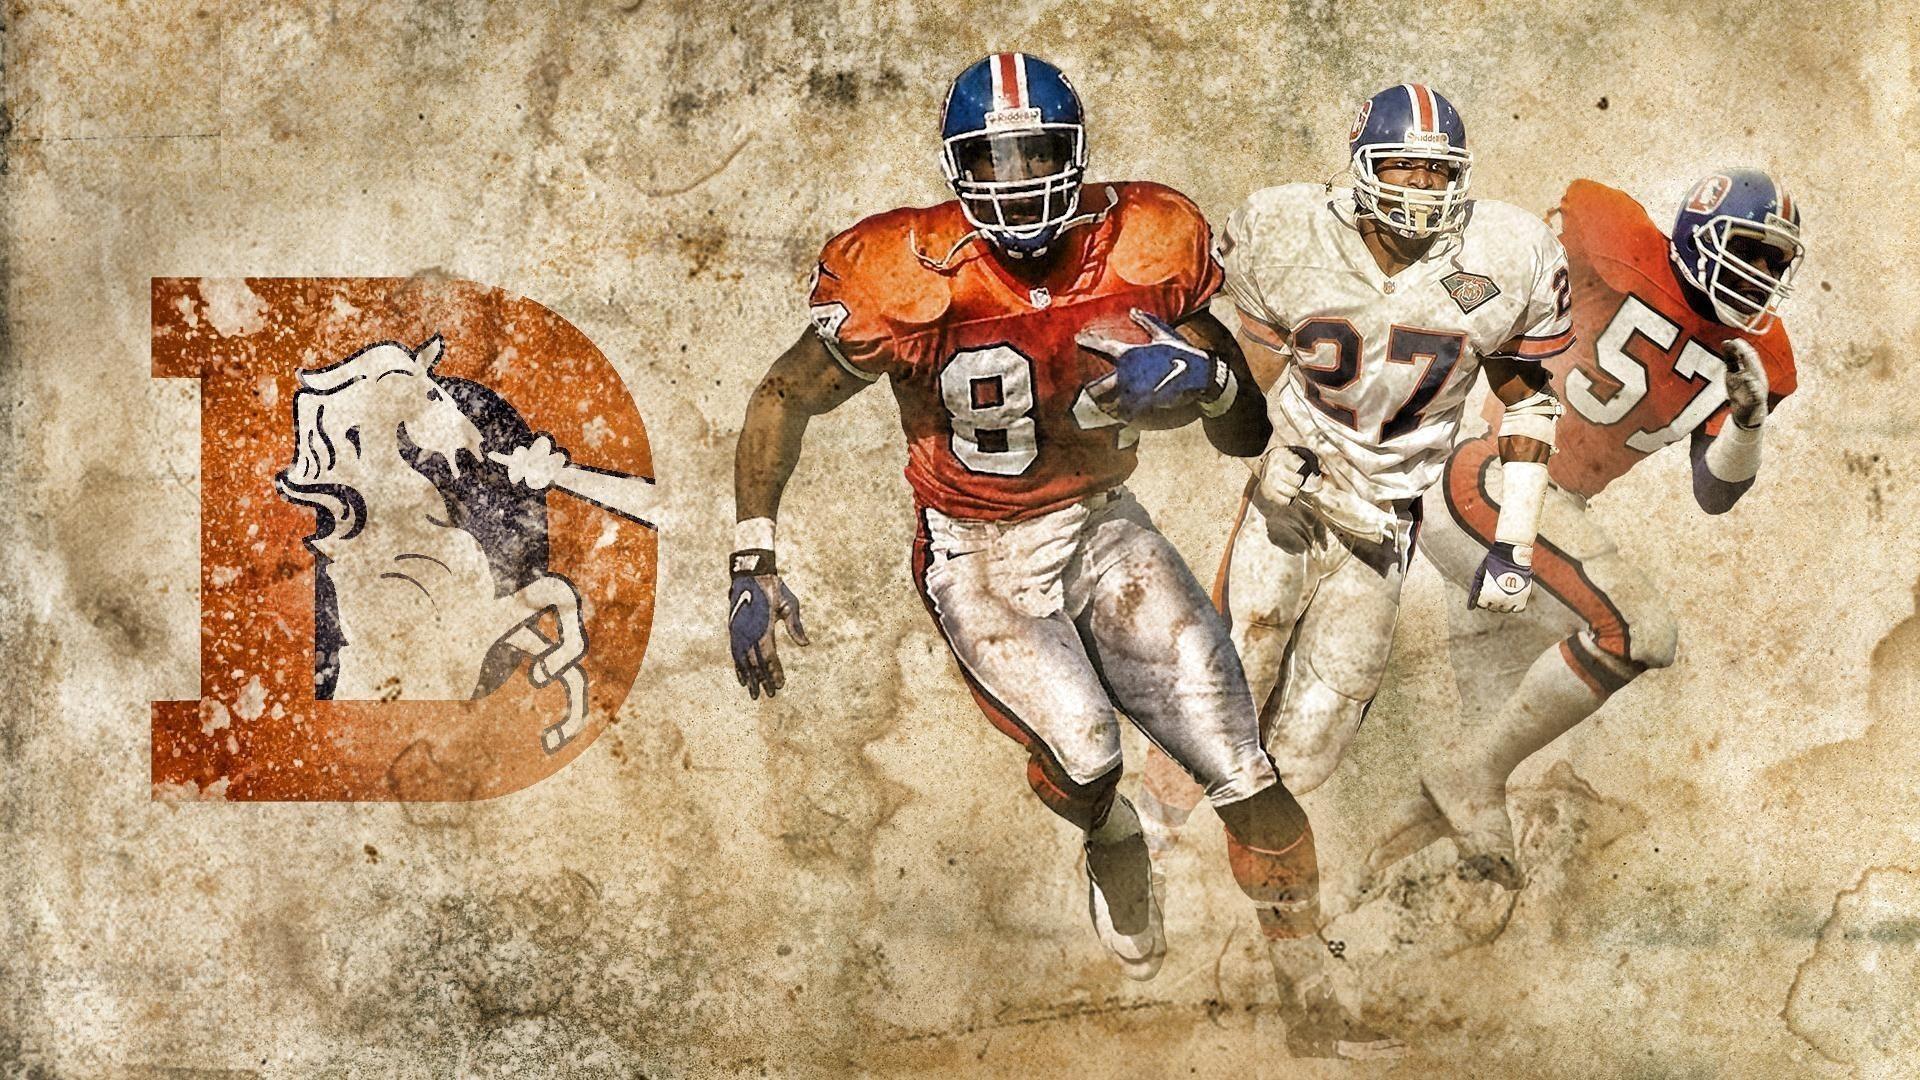 Denver Broncos Mac Background NFL Football Wallpaper. Broncos wallpaper, Football wallpaper, Denver broncos wallpaper